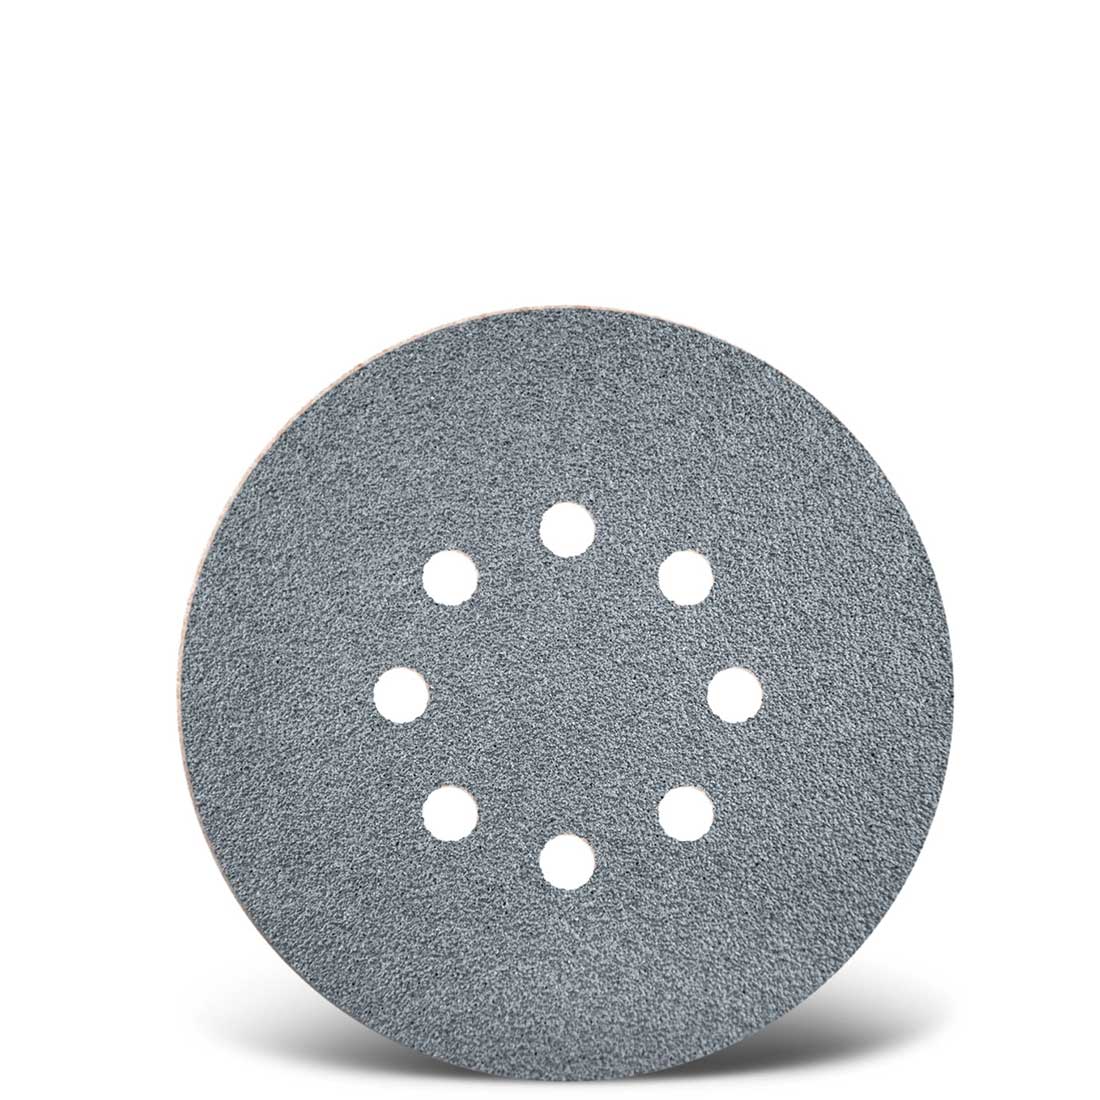 Dischi abrasivi velcrati MENZER per levigatrici rotorbitali, G40–400, Ø 150 mm / 8 fori / corindone semi-friabile con stearato